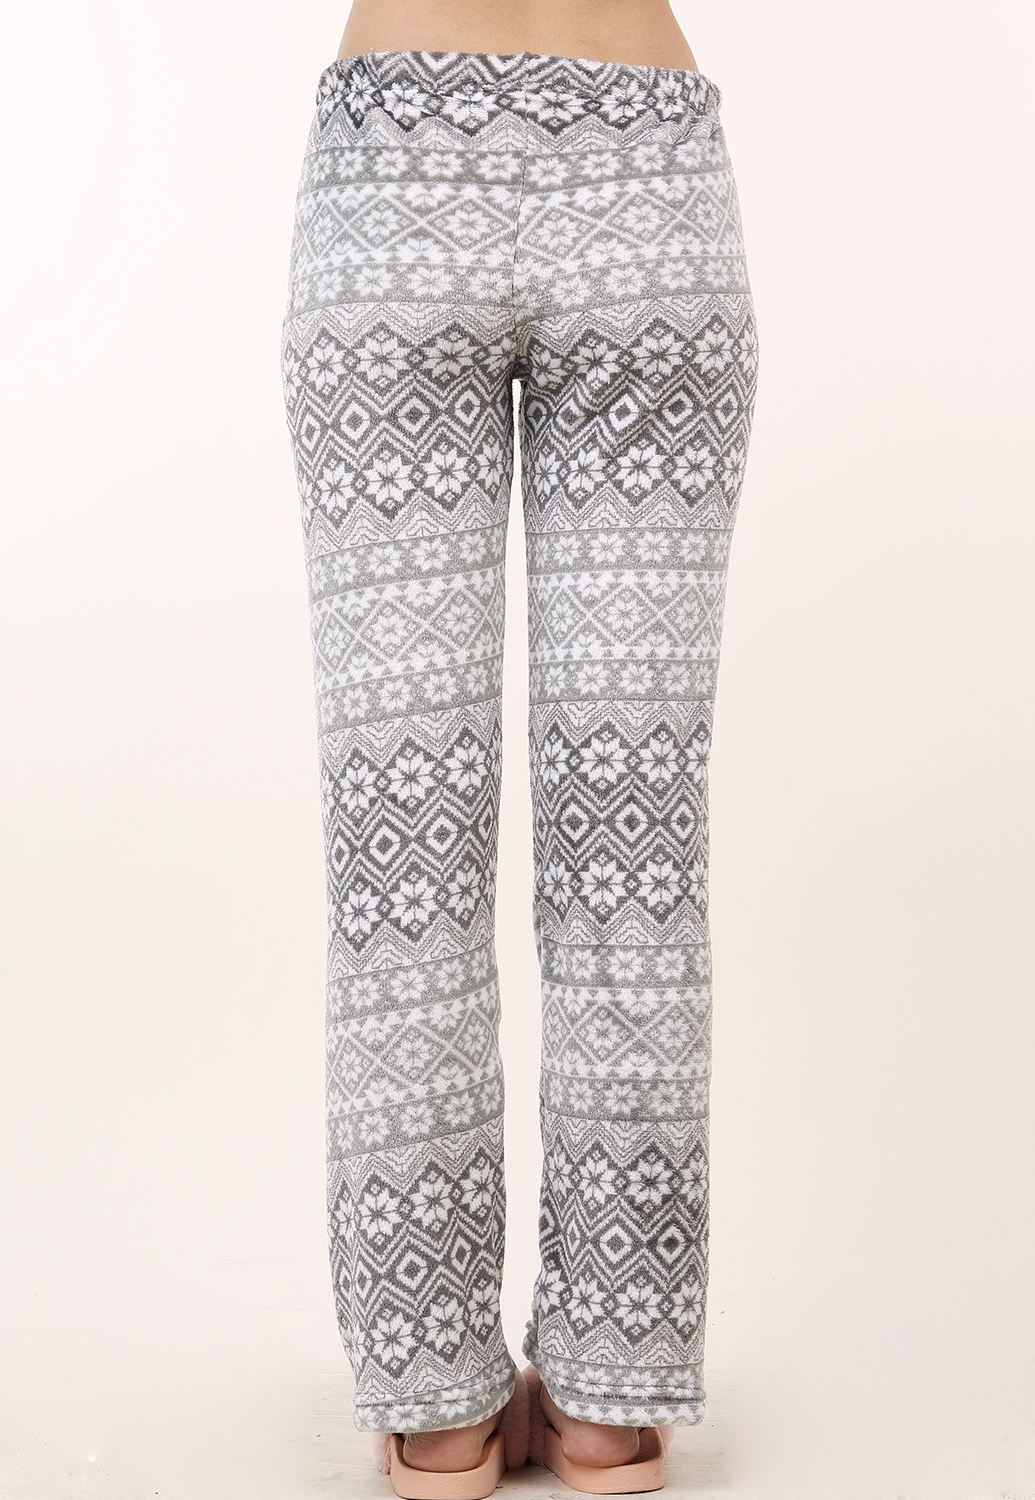 Snowflake Print Sleepwear Pants